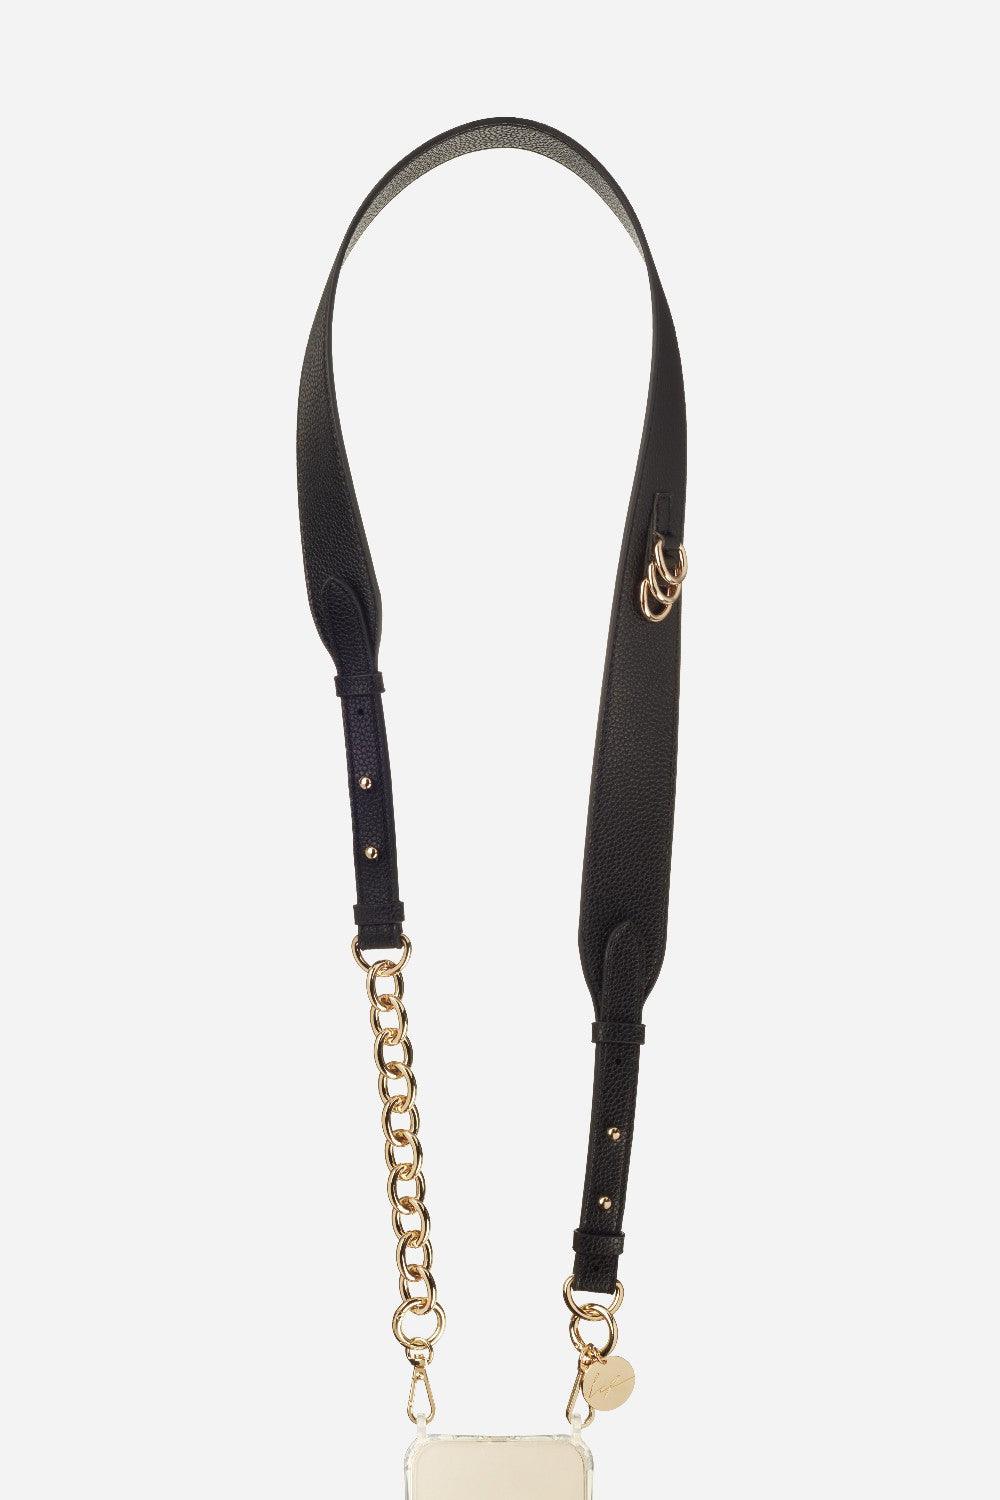 Long Lara Chain Black 120 cm